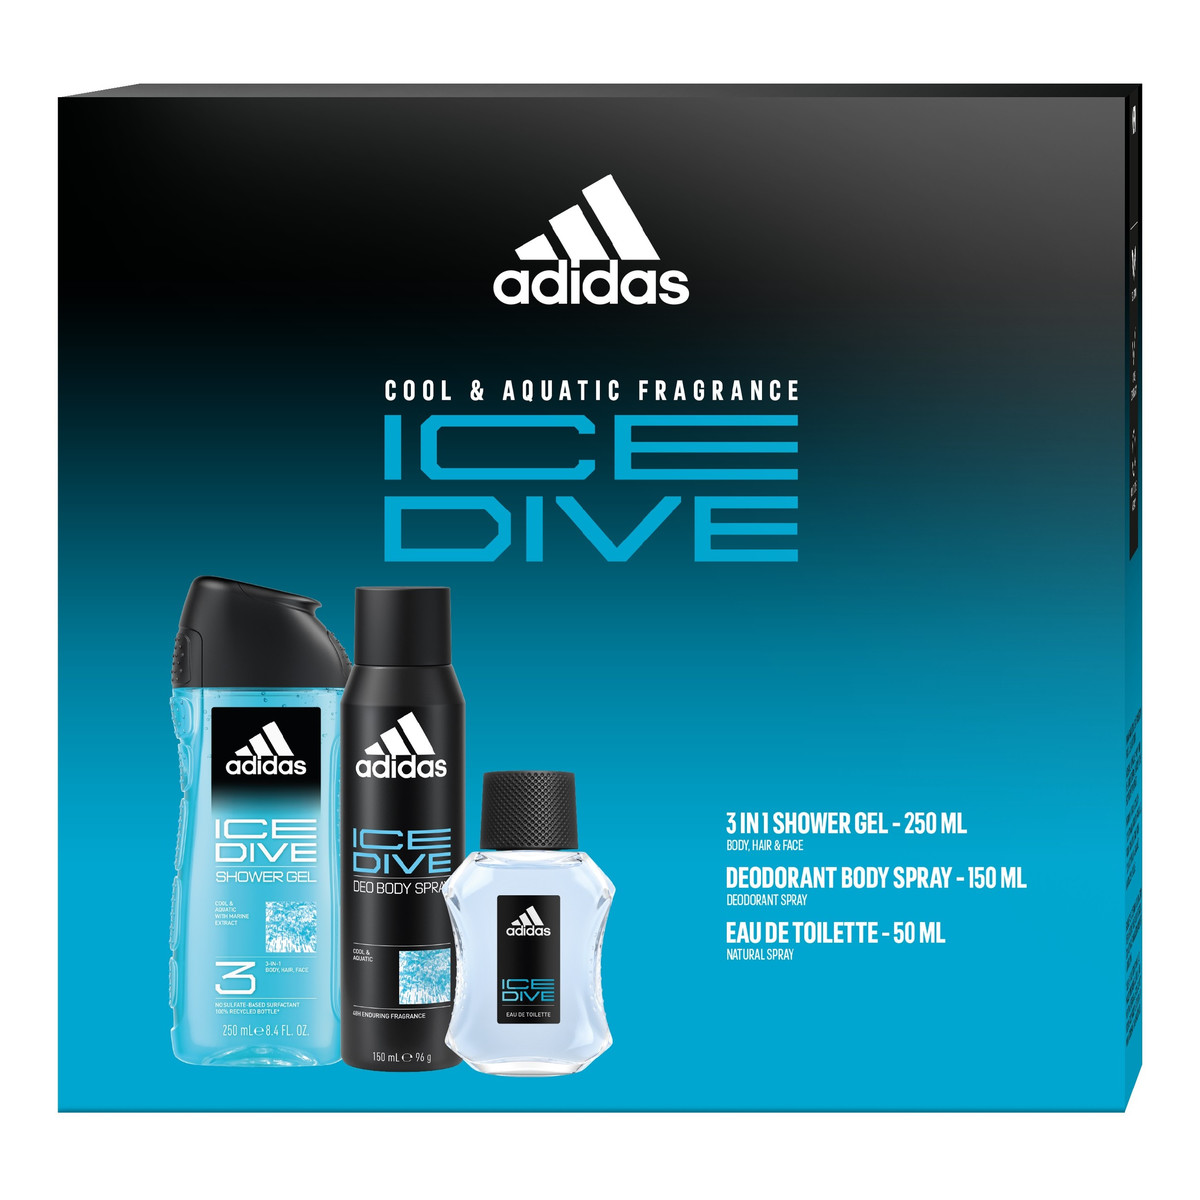 Adidas ADIDAS Zestaw prezentowy ice dive (woda toaletowa 50ml+dezodorant spray 150ml+żel pod prysznic 3w1)